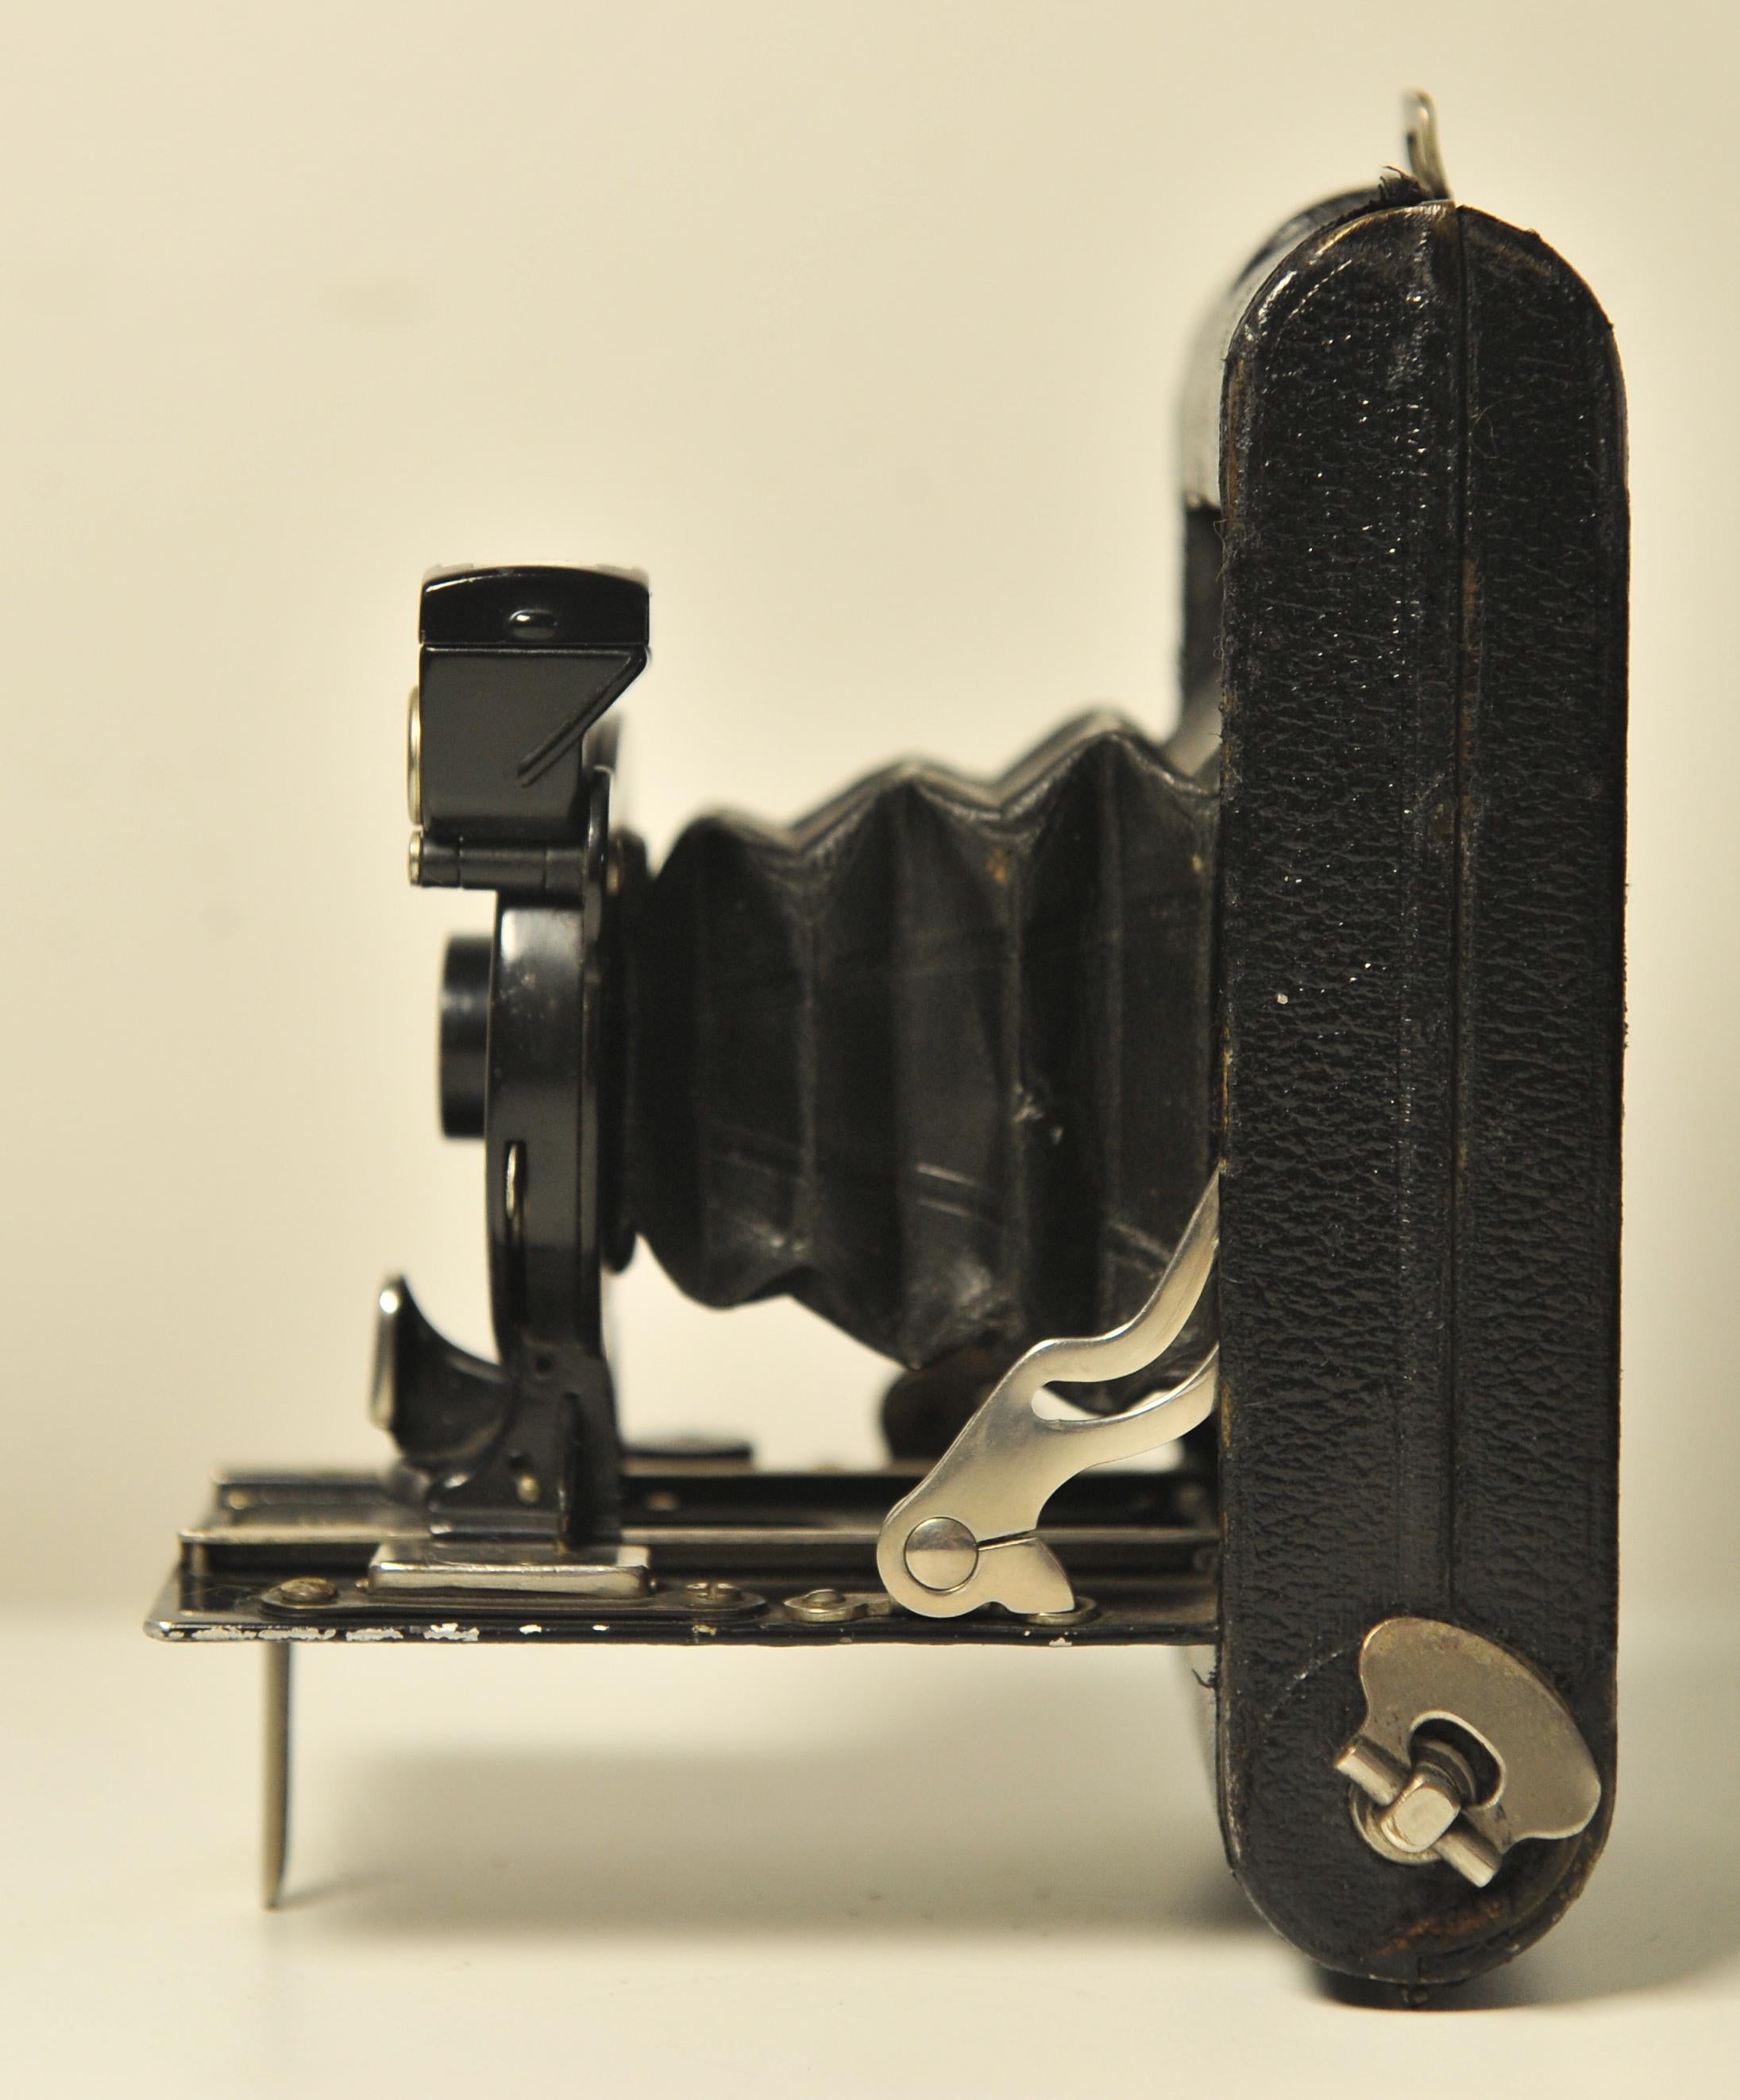 Ernemann ROLF II Faltbare 127 Rollfilmkamera 75mm F12 Rapid Rectilinear Festobjektiv aus Dresden, Deutschland

Hergestellt von Ernemann zwischen 1924-1926.

Maße gefaltet: 67 mm x 125 mm x 27 mm

Objektiv: f12, 75 mm , Blendenöffnungen von f12 und